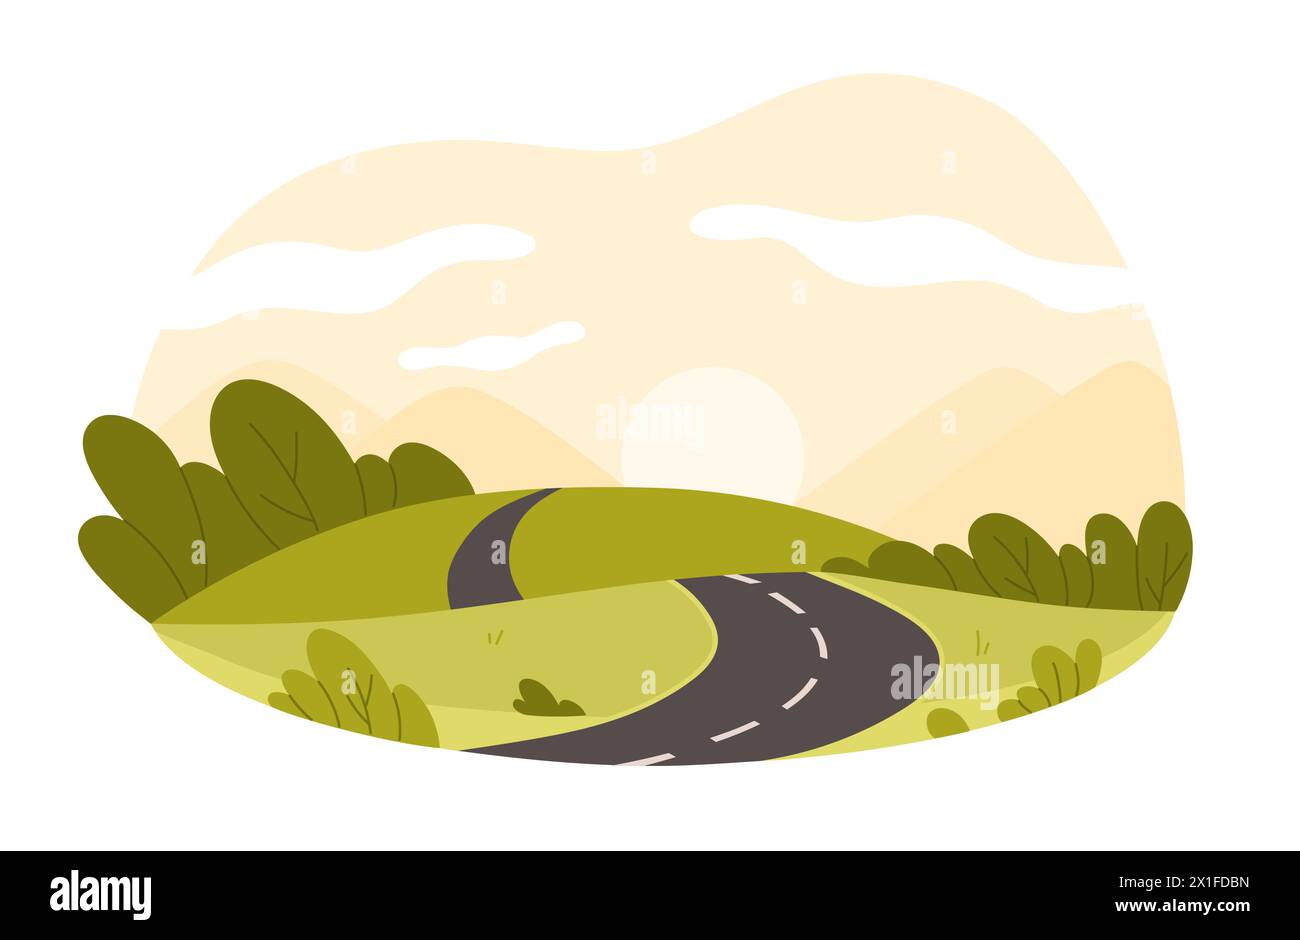 Une route de campagne pittoresque serpente à travers des collines verdoyantes sous un ciel de coucher de soleil doré, laissant entendre à la fin d'une journée tranquille isolée Illustration de Vecteur